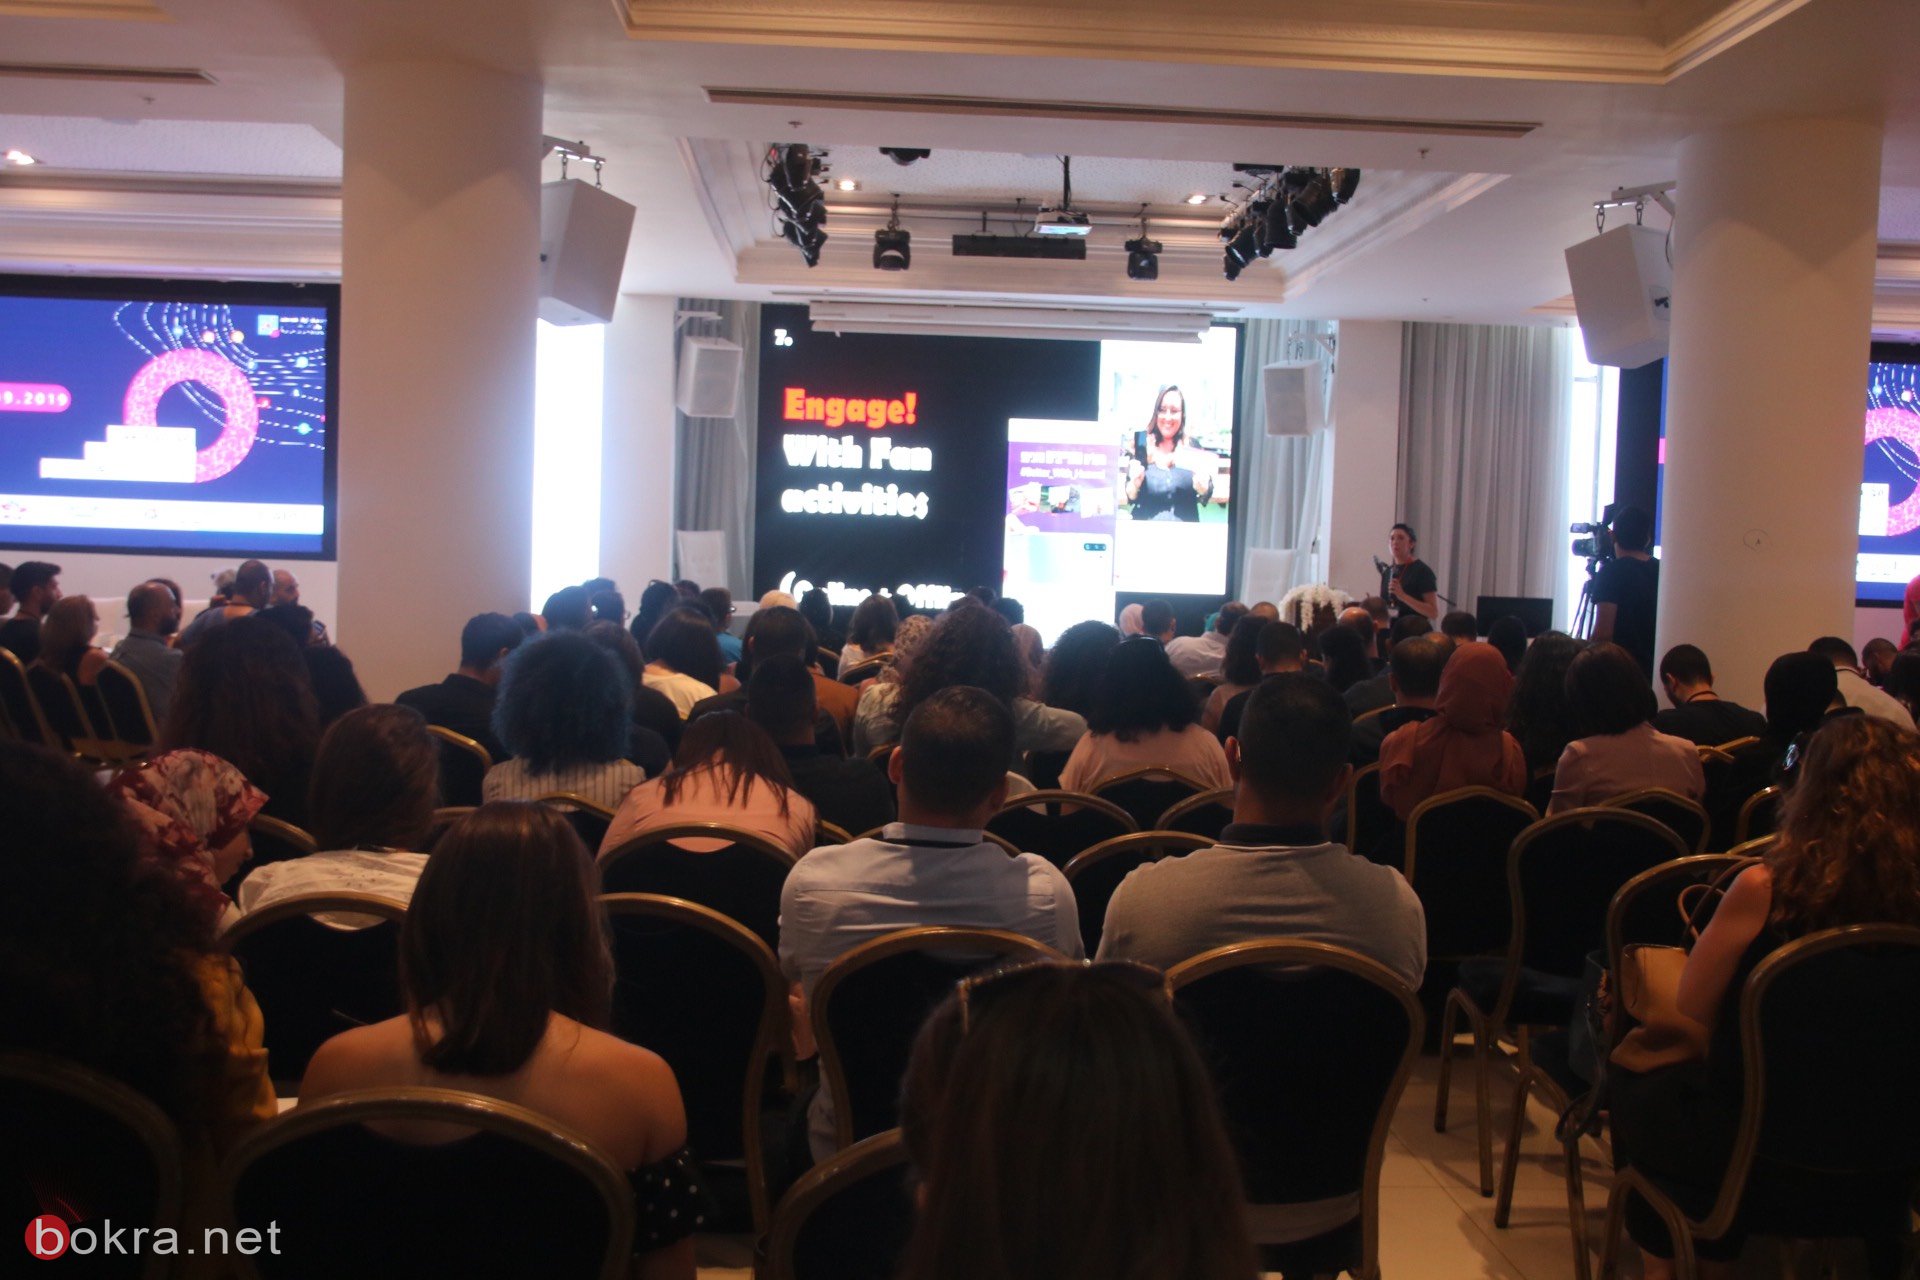 حيفا: مشاركة واسعة في مؤتمر "وصول" حول آخر التطورات في قنوات التسويق الرقمي-20